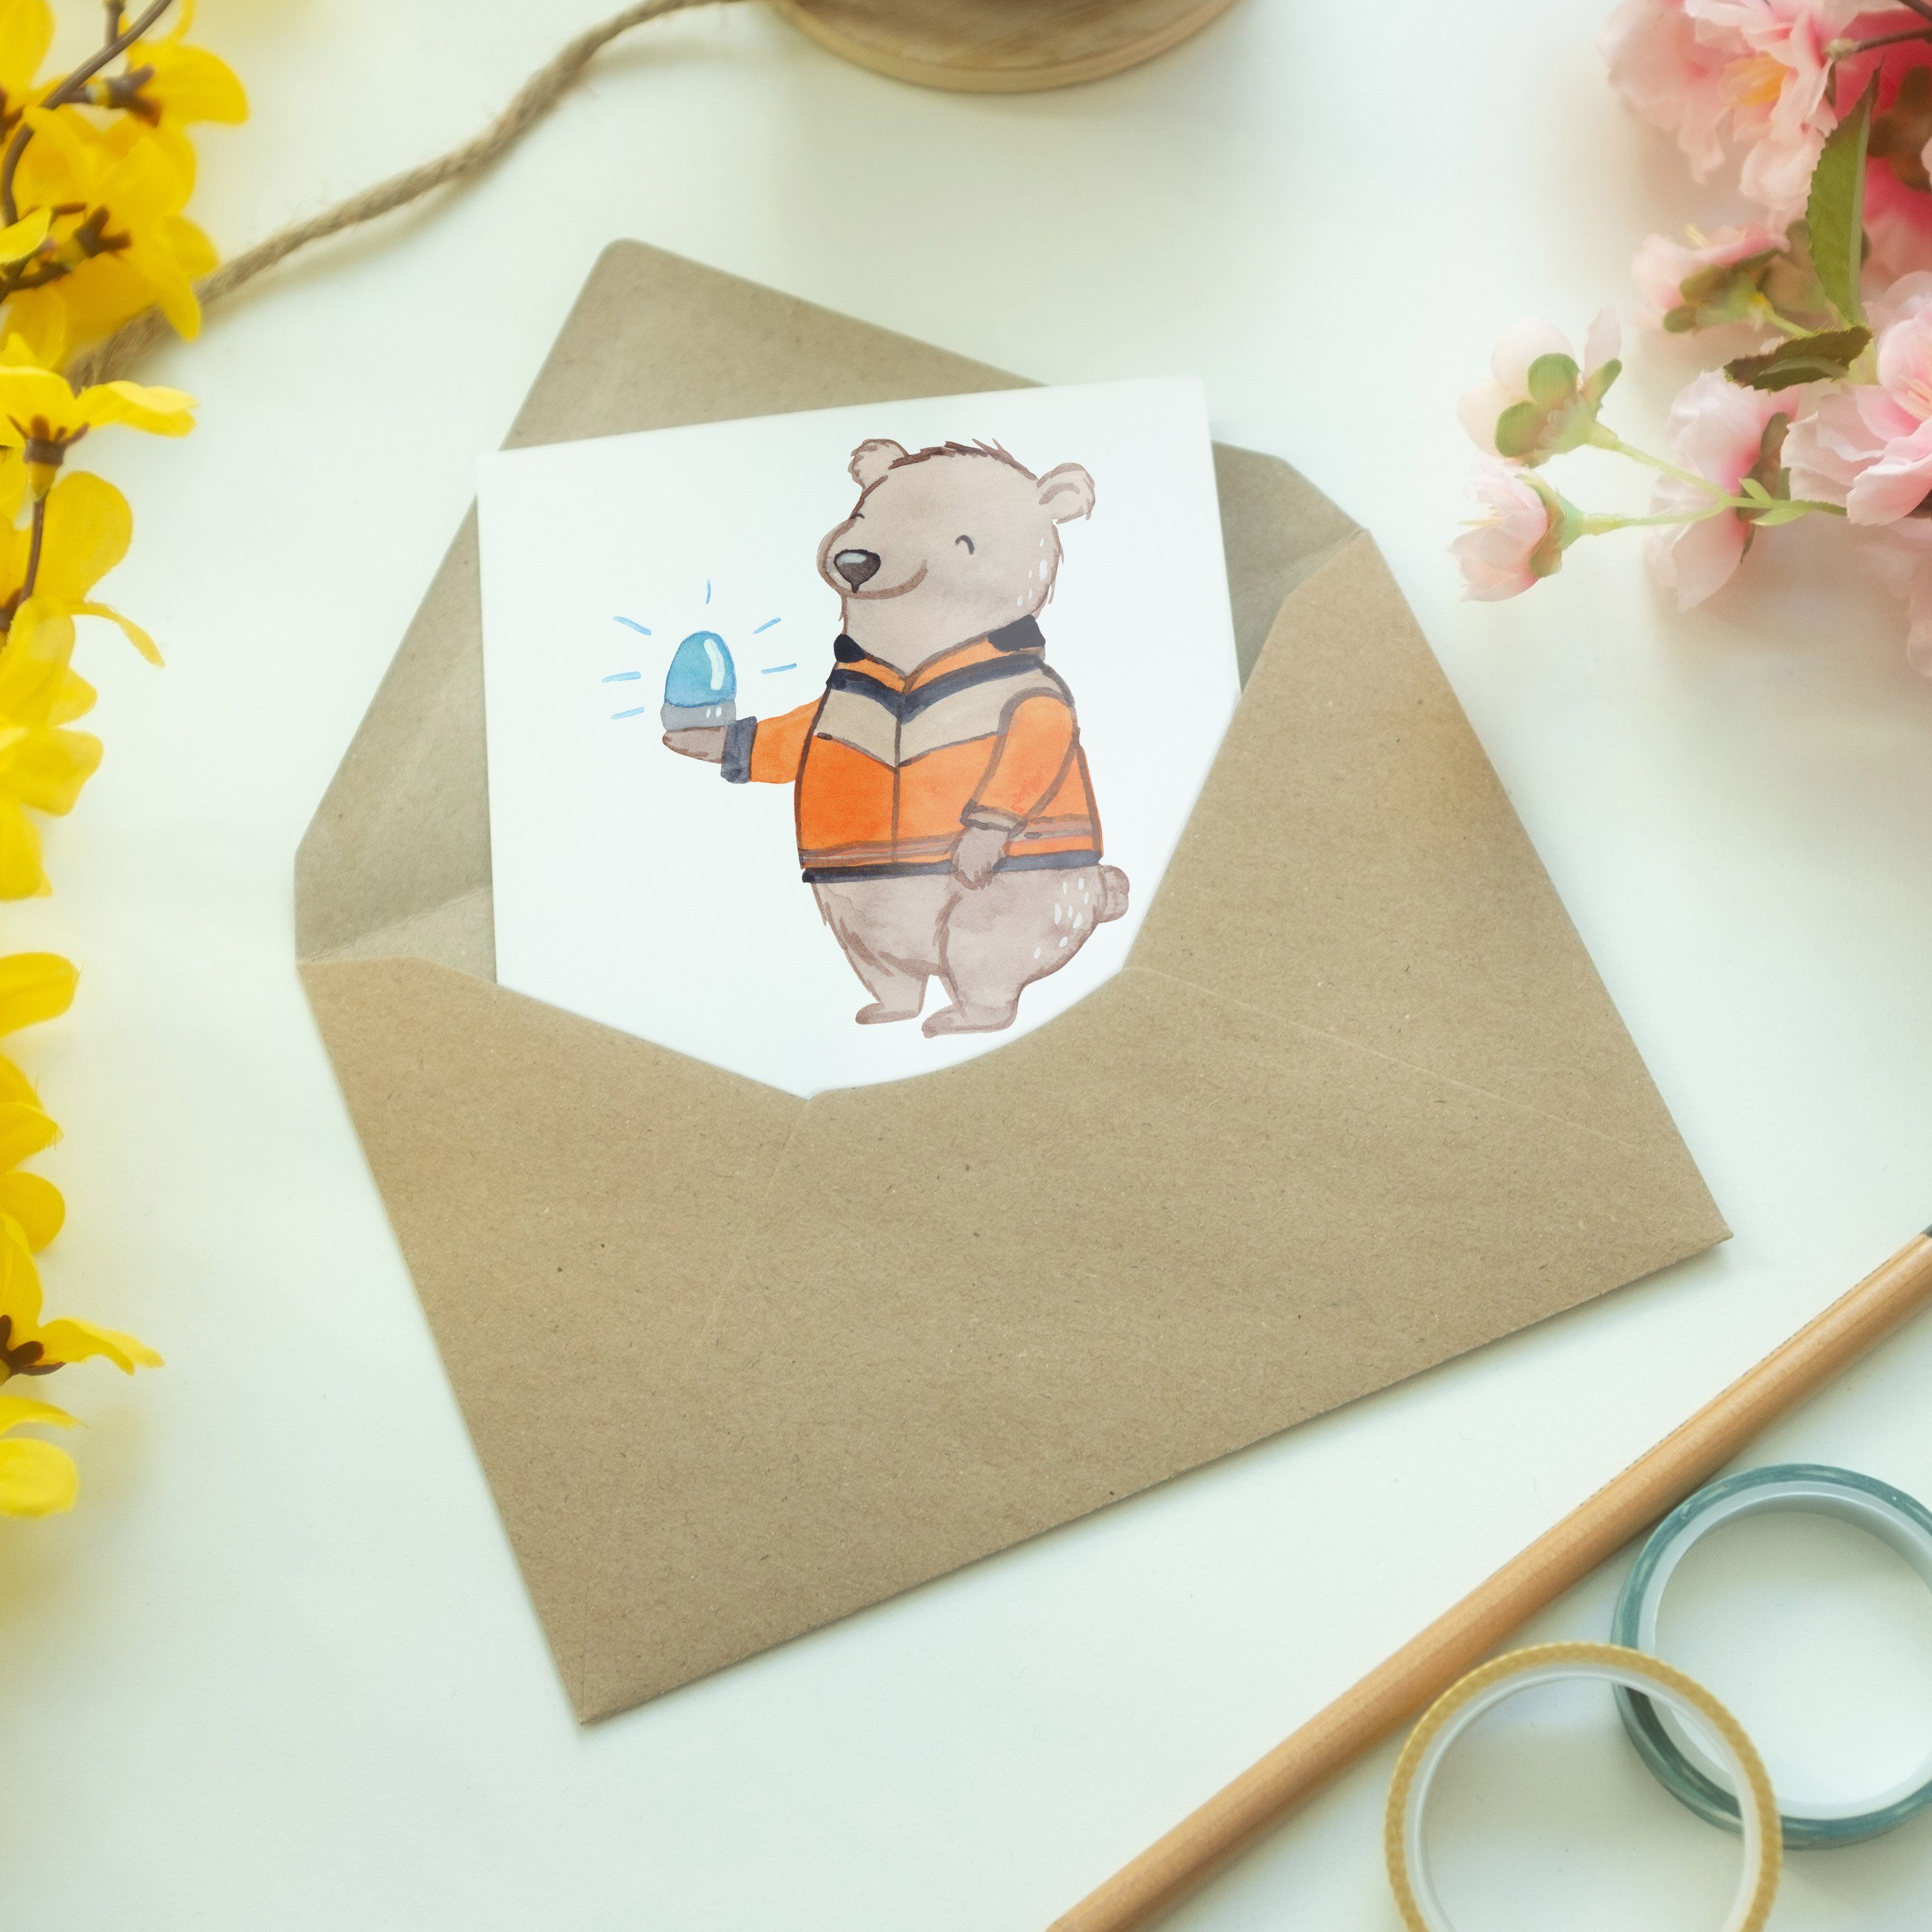 Mr. & Mrs. Panda mit Geschenk, Grußkarte Herz Glückwunschkarte, - Weiß Hoc Rettungswagenfahrer 